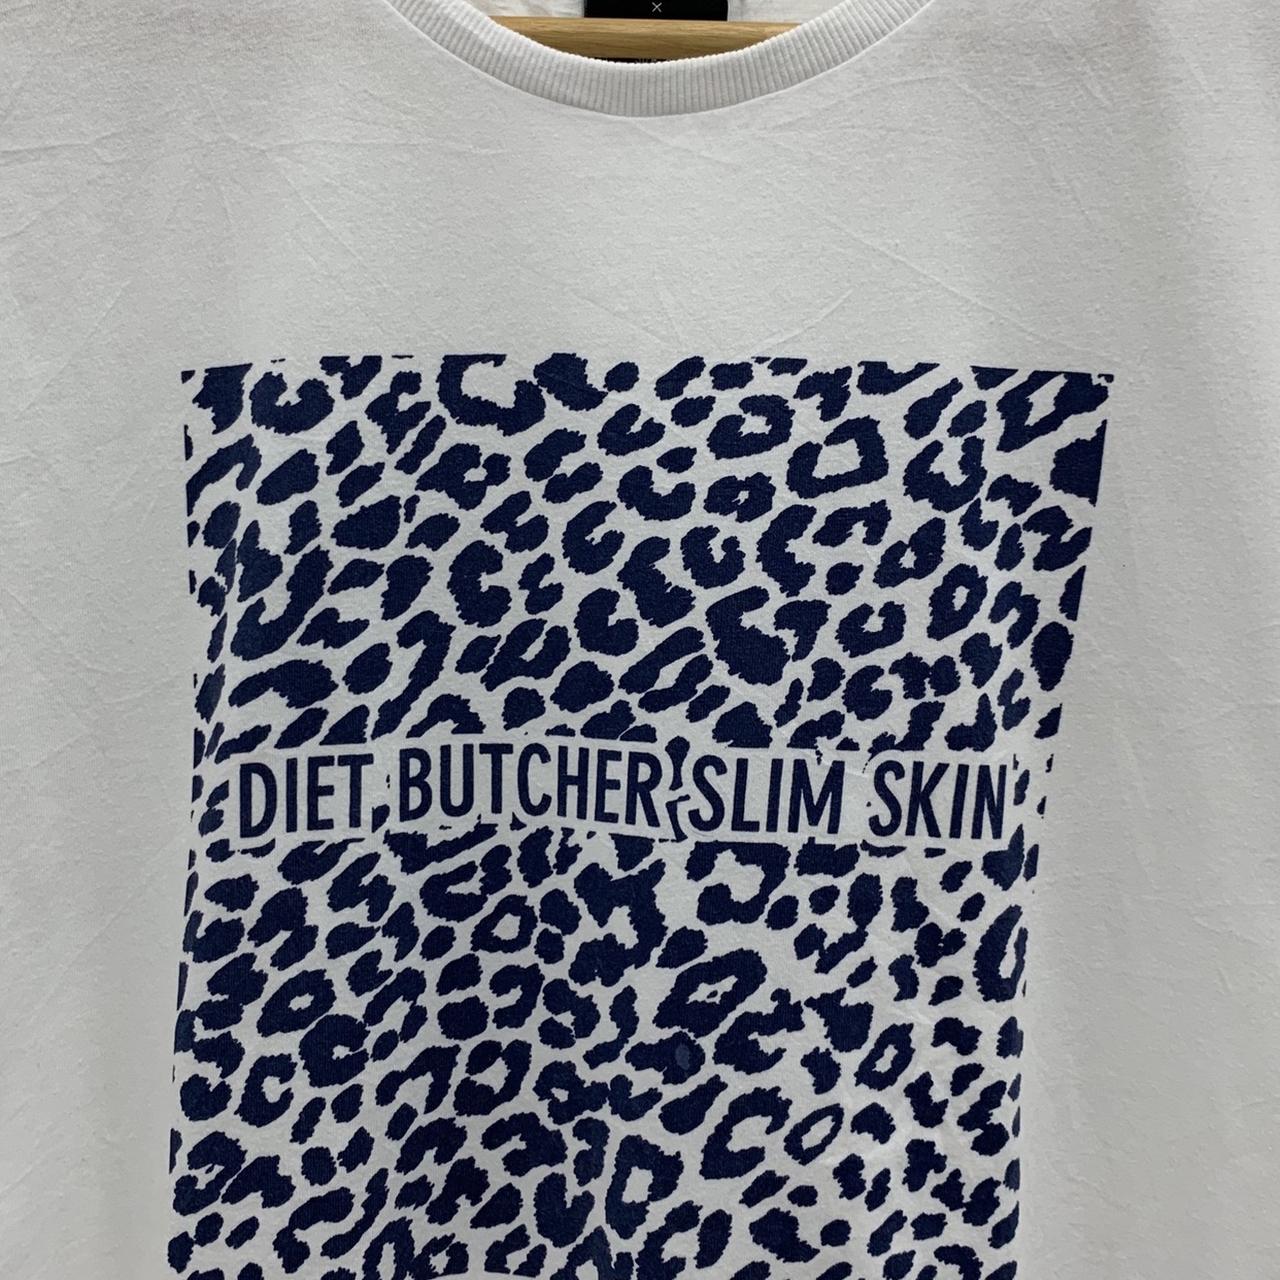 Diet Butcher Slim Skin Gooood's Sense Shirt An - Depop